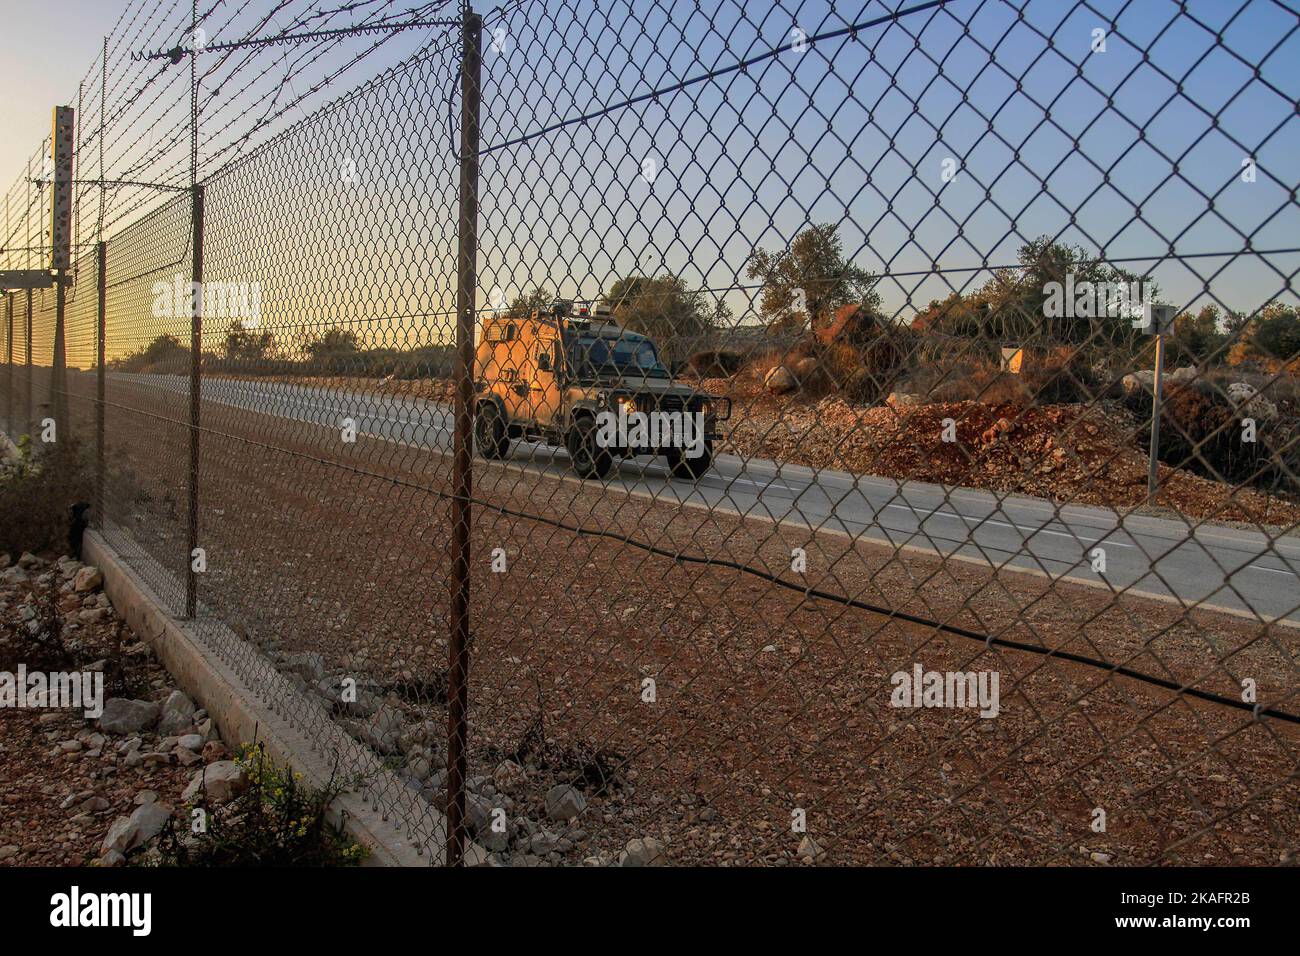 Un veicolo militare israeliano trasporta i soldati fino alla porta della barriera di separazione nella Cisgiordania occupata a nord per aprire la porta affinché gli agricoltori palestinesi entrino nelle loro terre confiscate da Israele. Gli agricoltori palestinesi hanno chiuso le porte situate sul muro che separava la città di Salfit e l'insediamento ebraico di Ariel per raggiungere le loro terre confiscate per raccogliere le olive, Dopo che l'esercito israeliano li ha aperti alle sette del mattino e li ha chiusi fino alle quattro della sera e li ha riaperti per consentire agli agricoltori di andarsene. Foto Stock